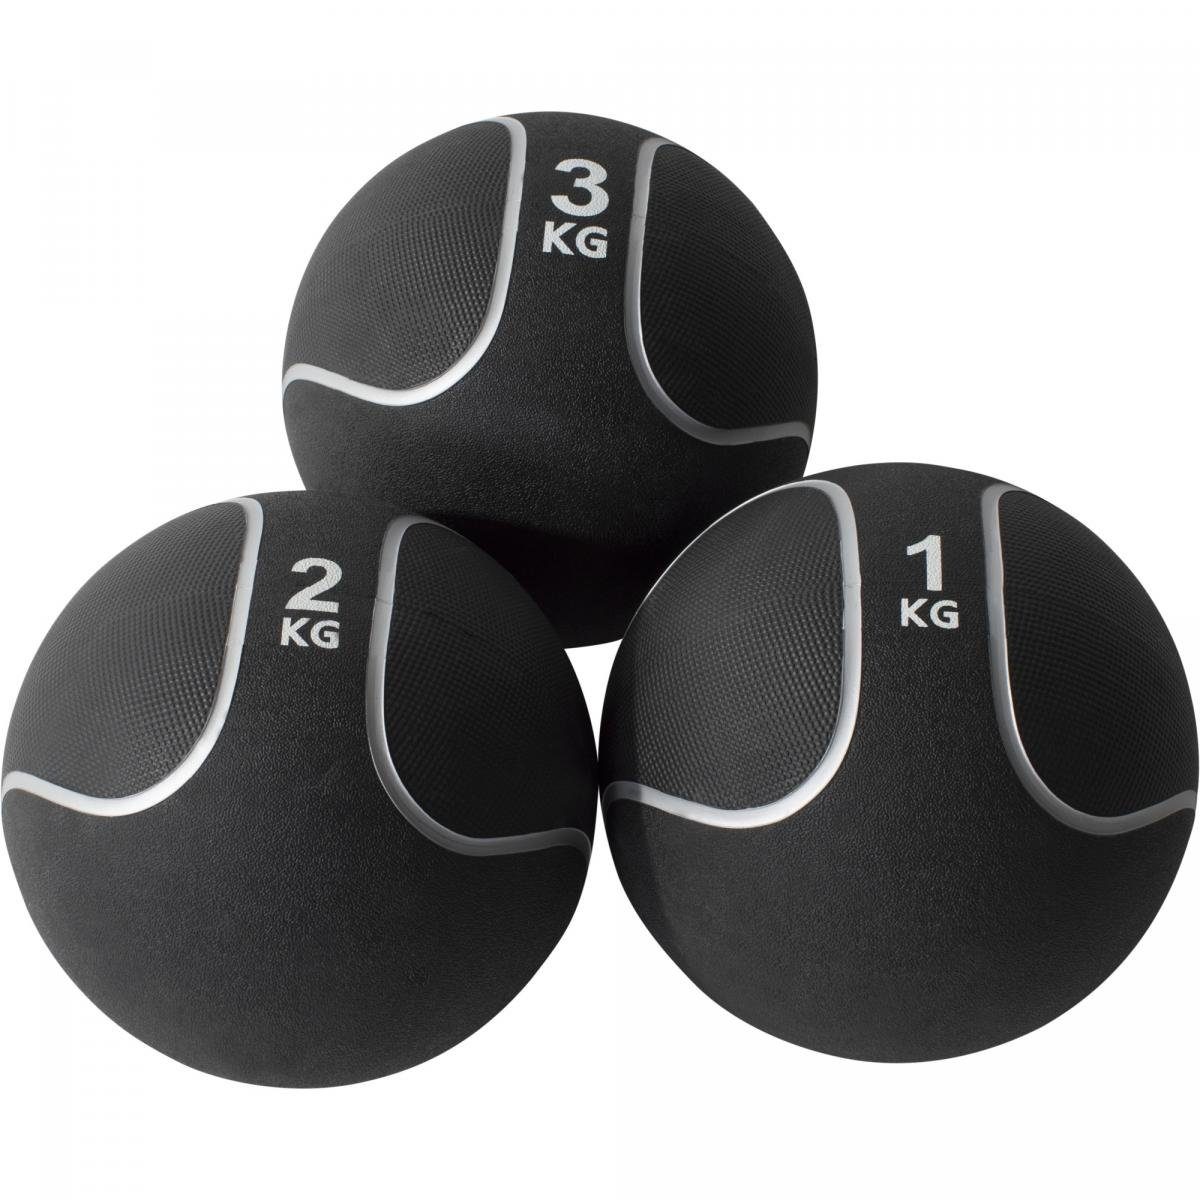 GORILLA SPORTS Medizinball Einzeln / Set, Ø 23 oder 29 cm, rutschfest, aus Gummi, Fitnessball % SET 6 KG